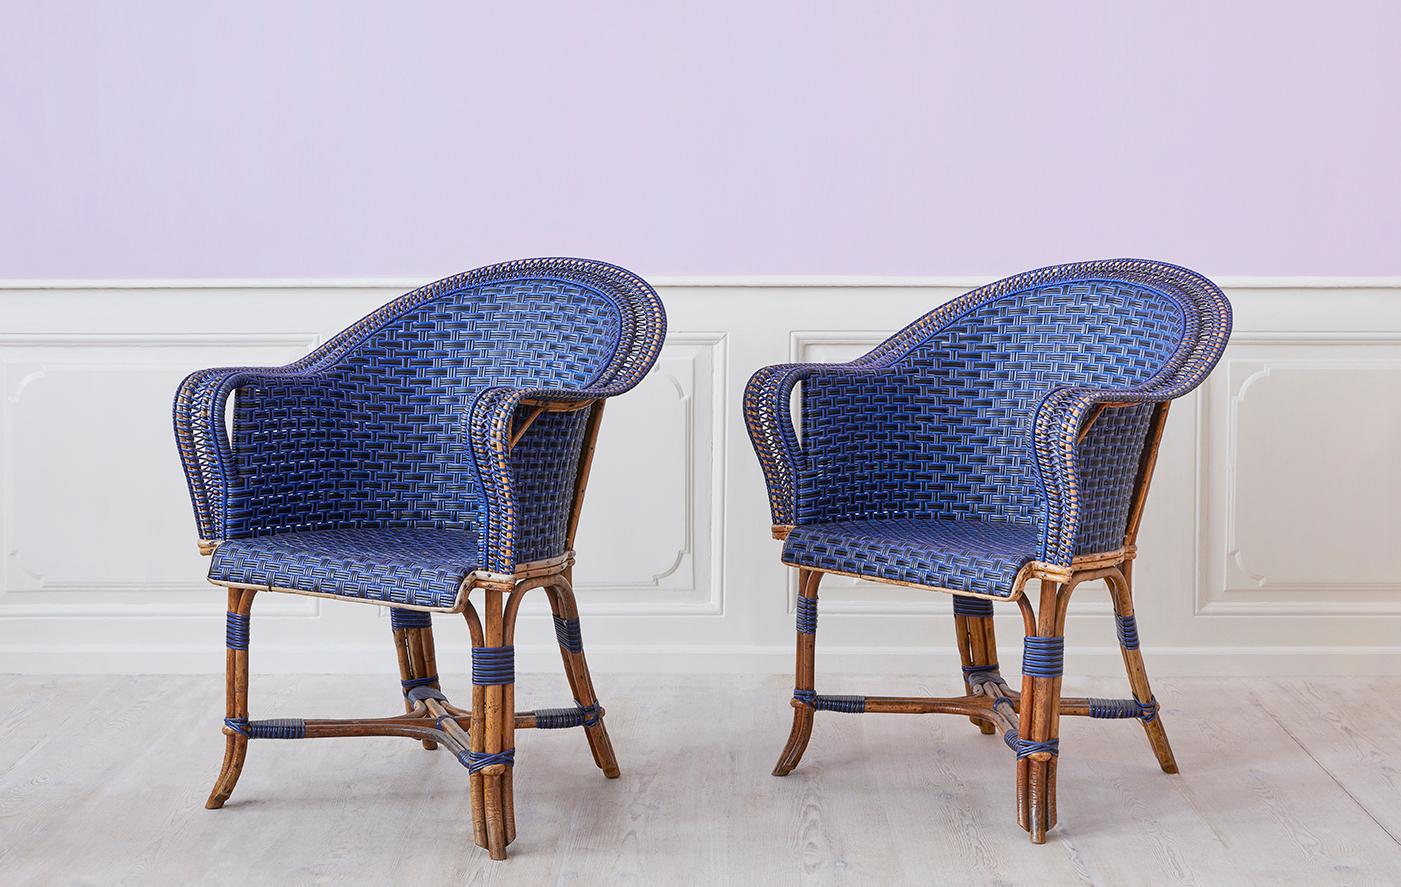 France, début du 20e siècle

Paire de fauteuils en rotin bleu et noir. 

H 89 x L 71 x P 89 cm